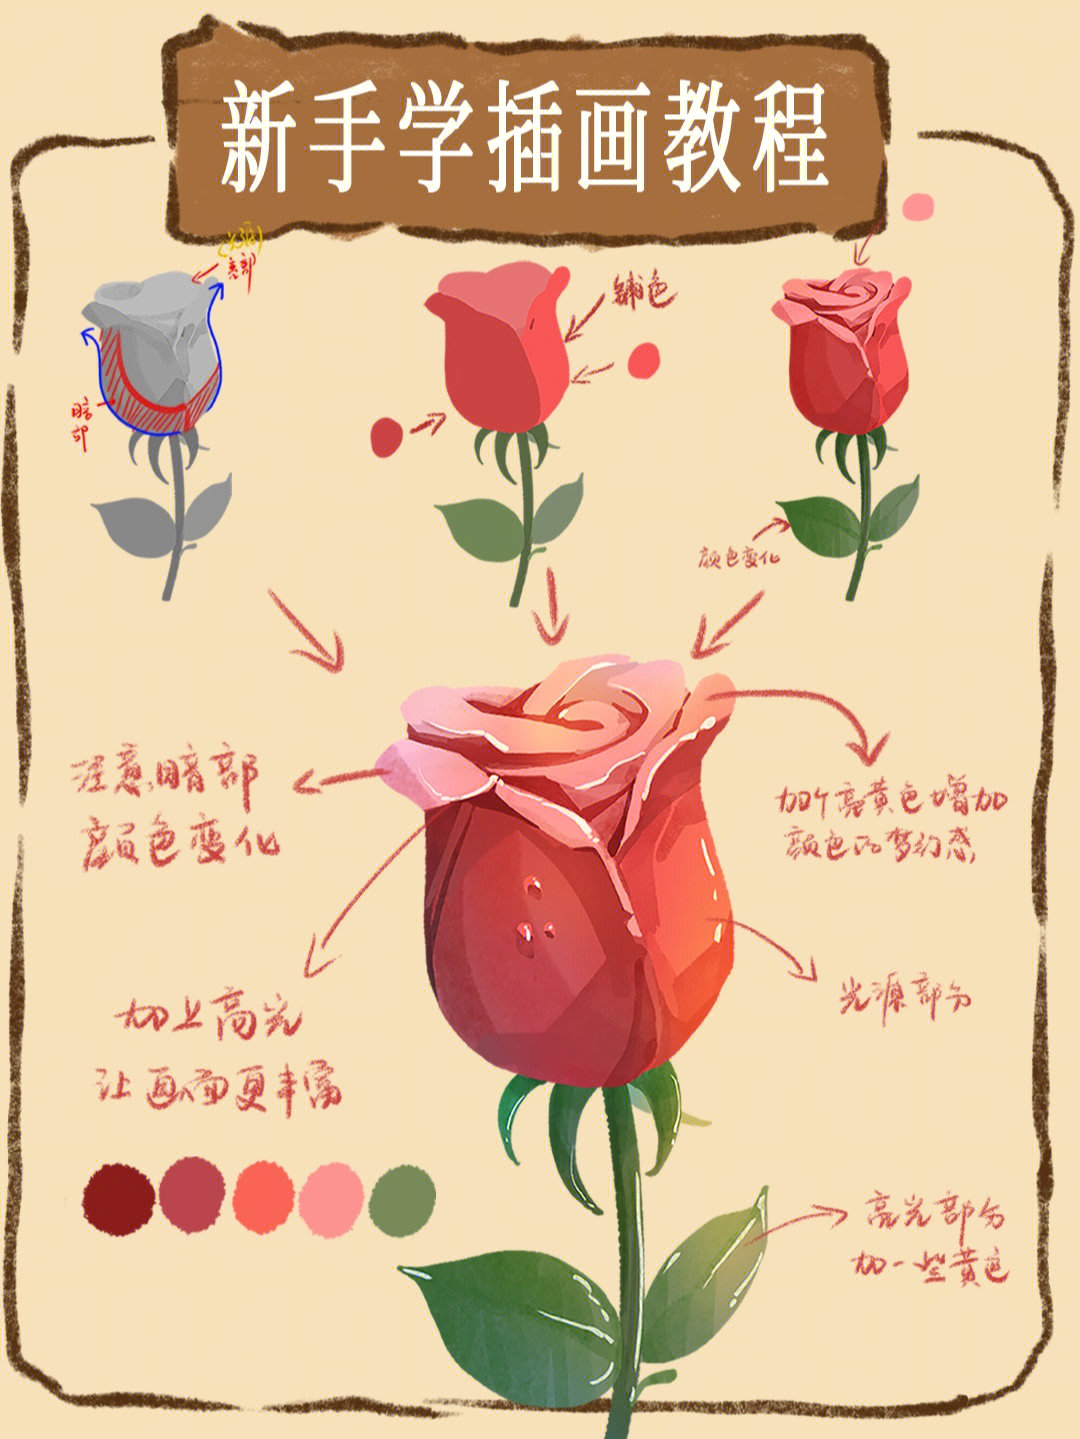 零基础学画画画一朵超简单的玫瑰花